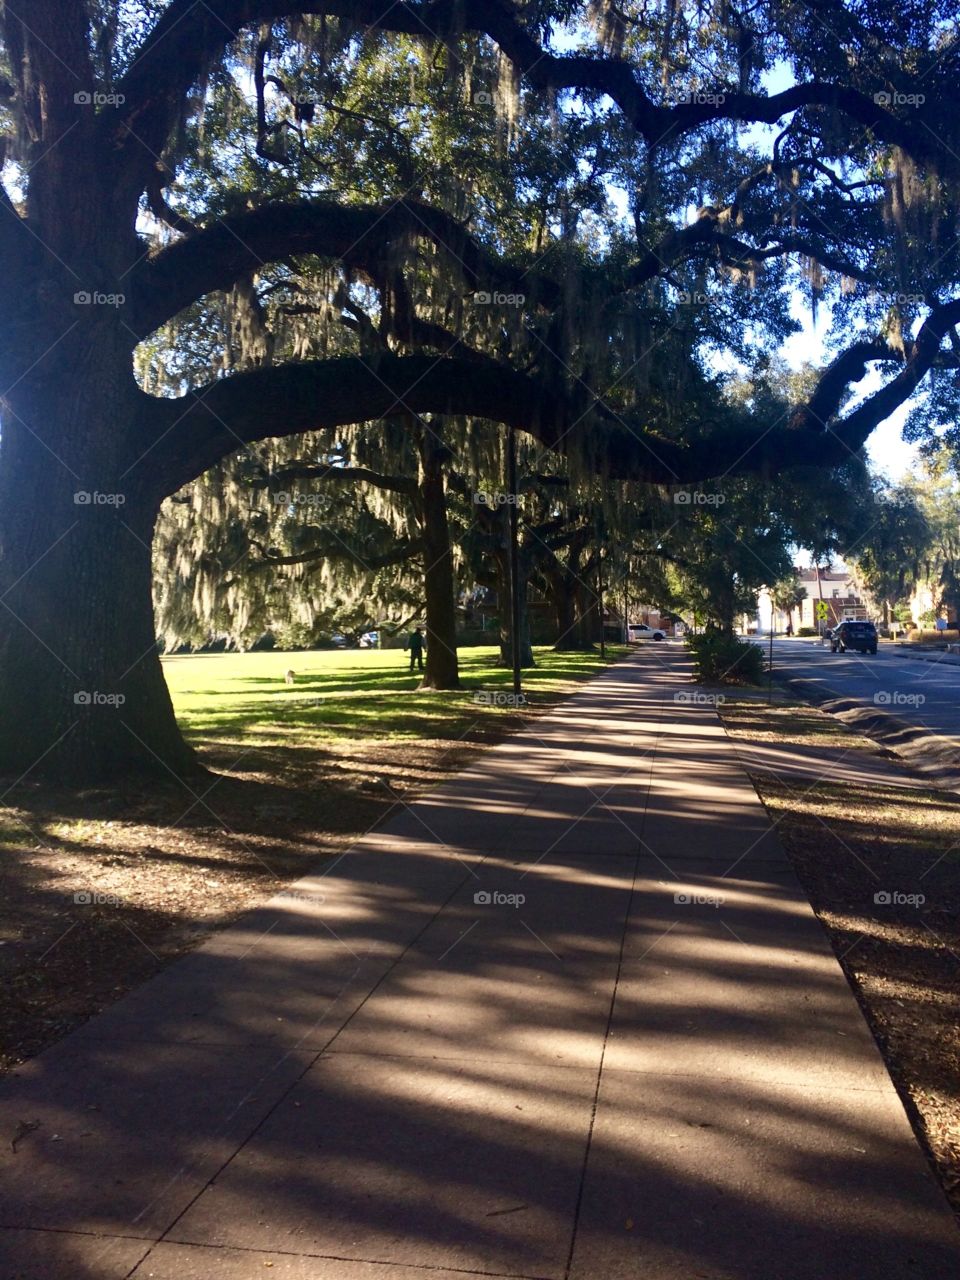 Savannah Georgia Tree Lined Streets